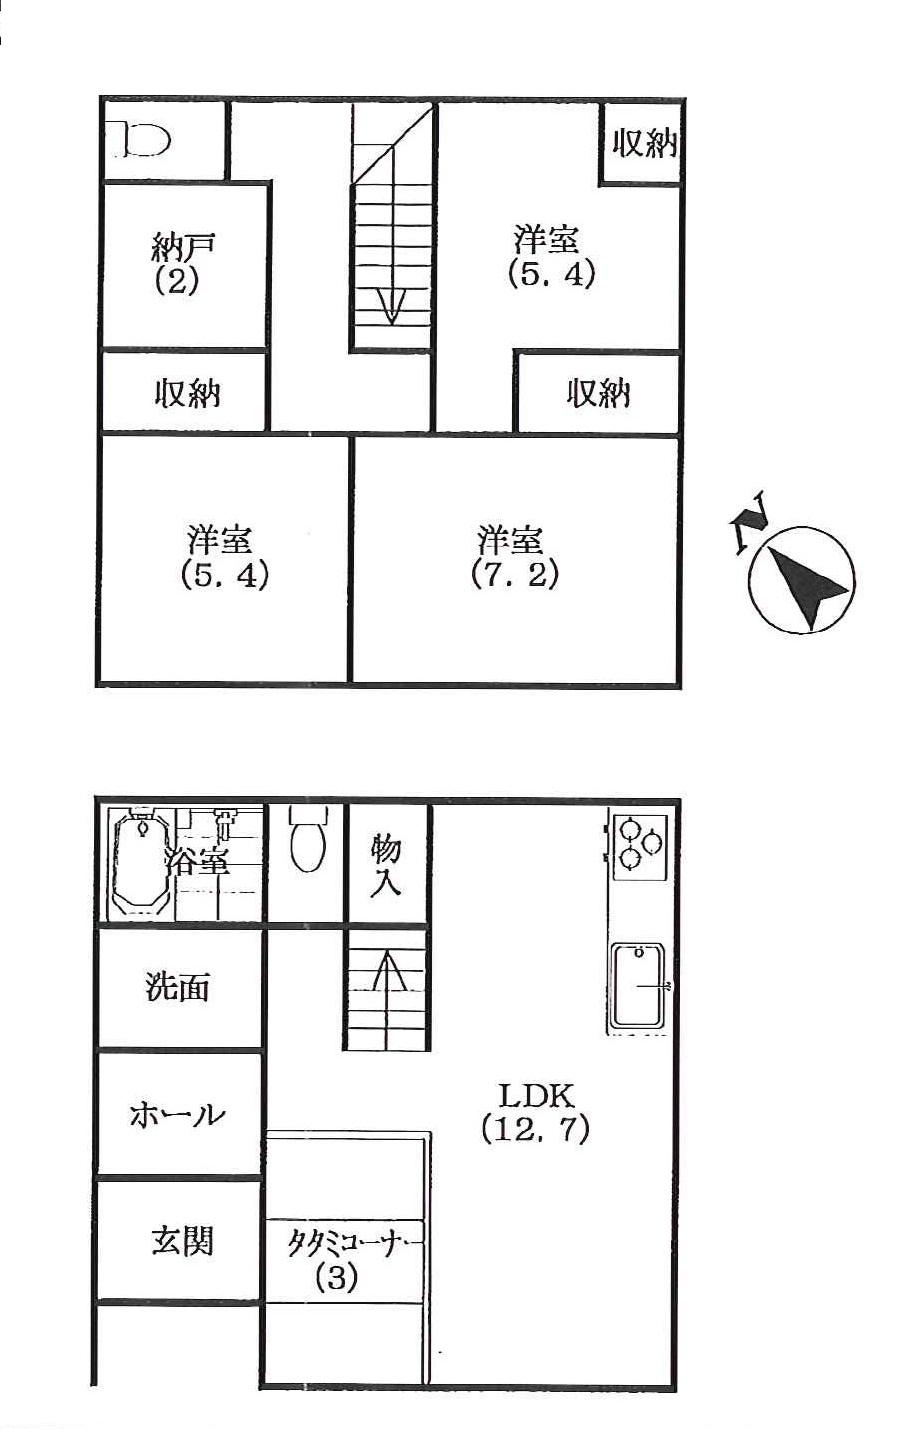 Floor plan. 19,800,000 yen, 3LDK + S (storeroom), Land area 215.64 sq m , Building area 96 sq m